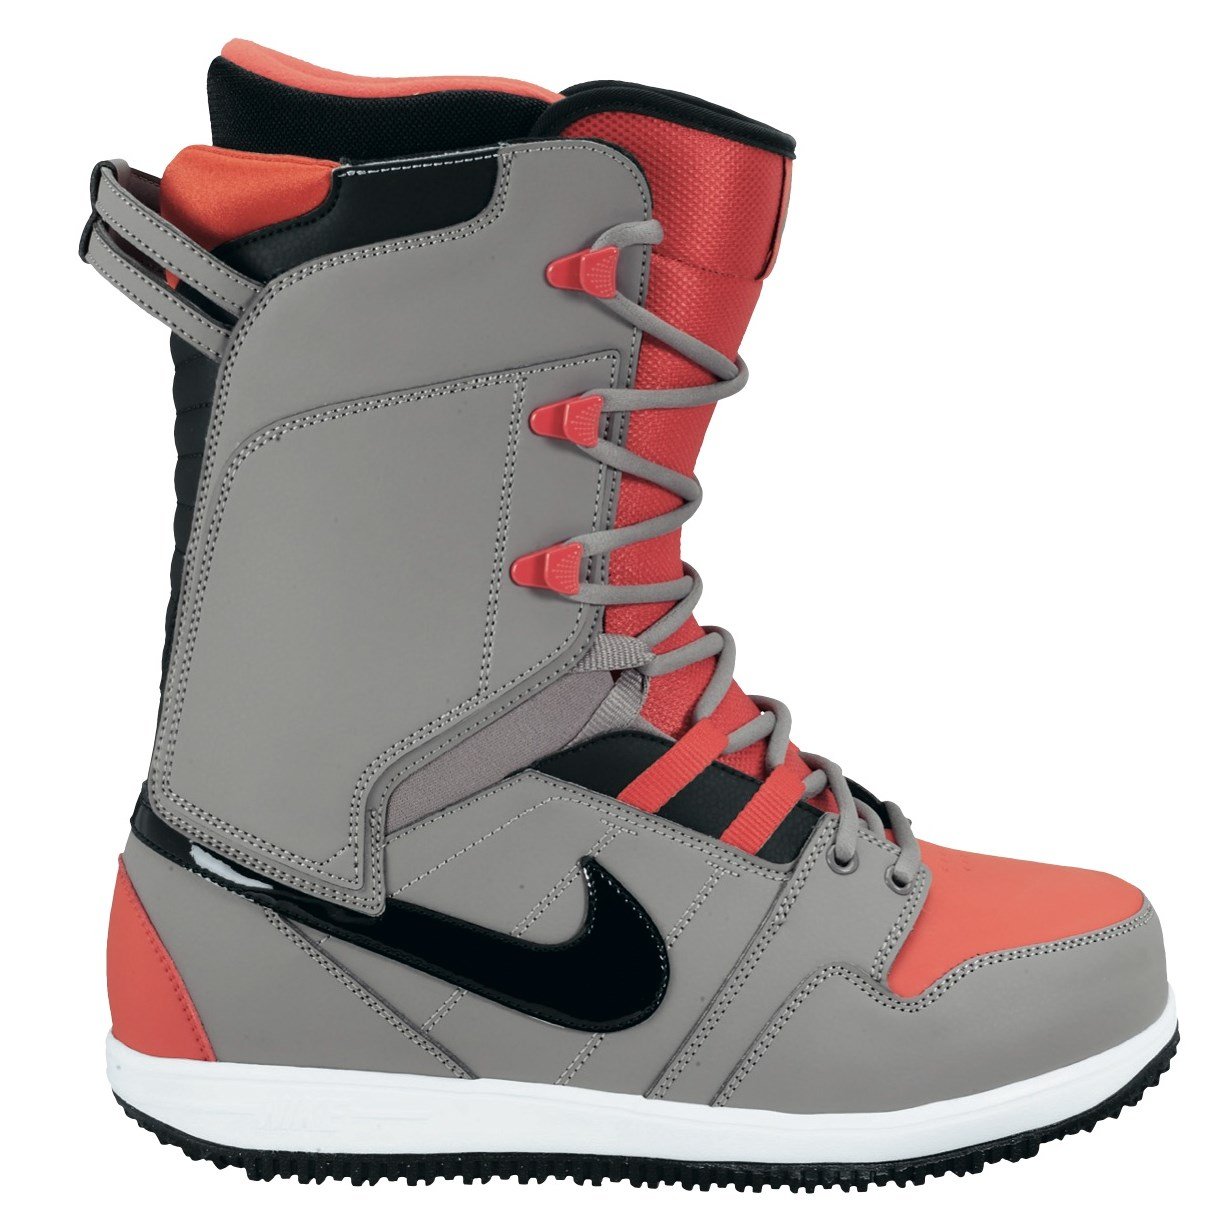 Nike Vapen Snowboard Boots 2013 | evo